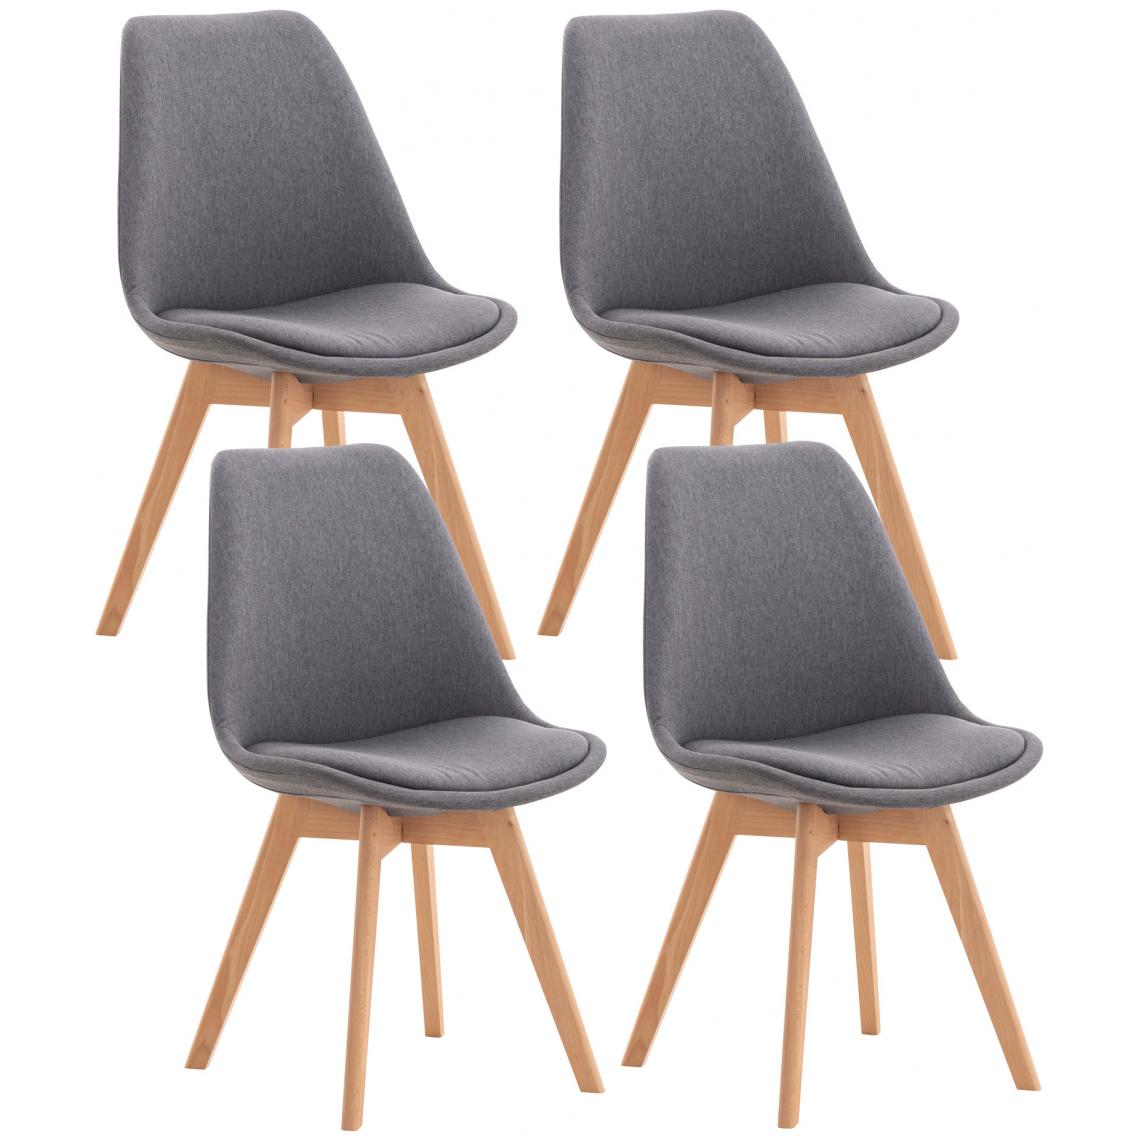 Icaverne - Magnifique Lot de 4 chaises en tissu reference Oulan-Bator couleur gris - Tabourets